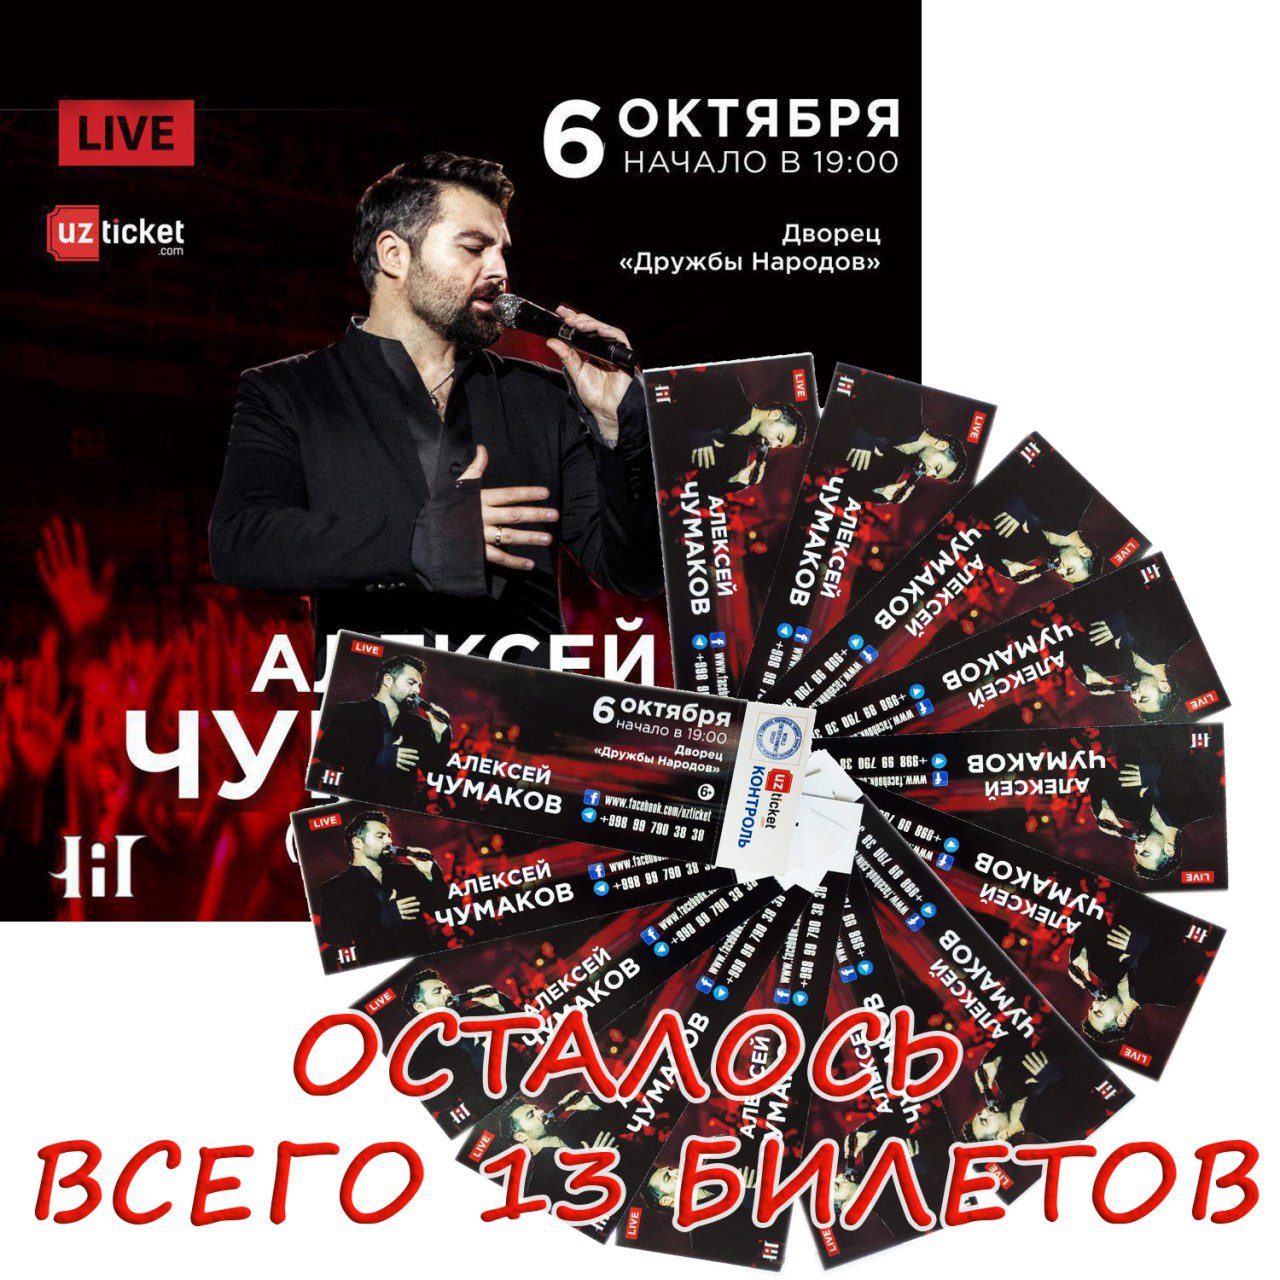 Салават концерт купить билеты. Билет на концерт Алексея Чумакова. Картинка афиша концерт Чумаков. Название концерта в марте.